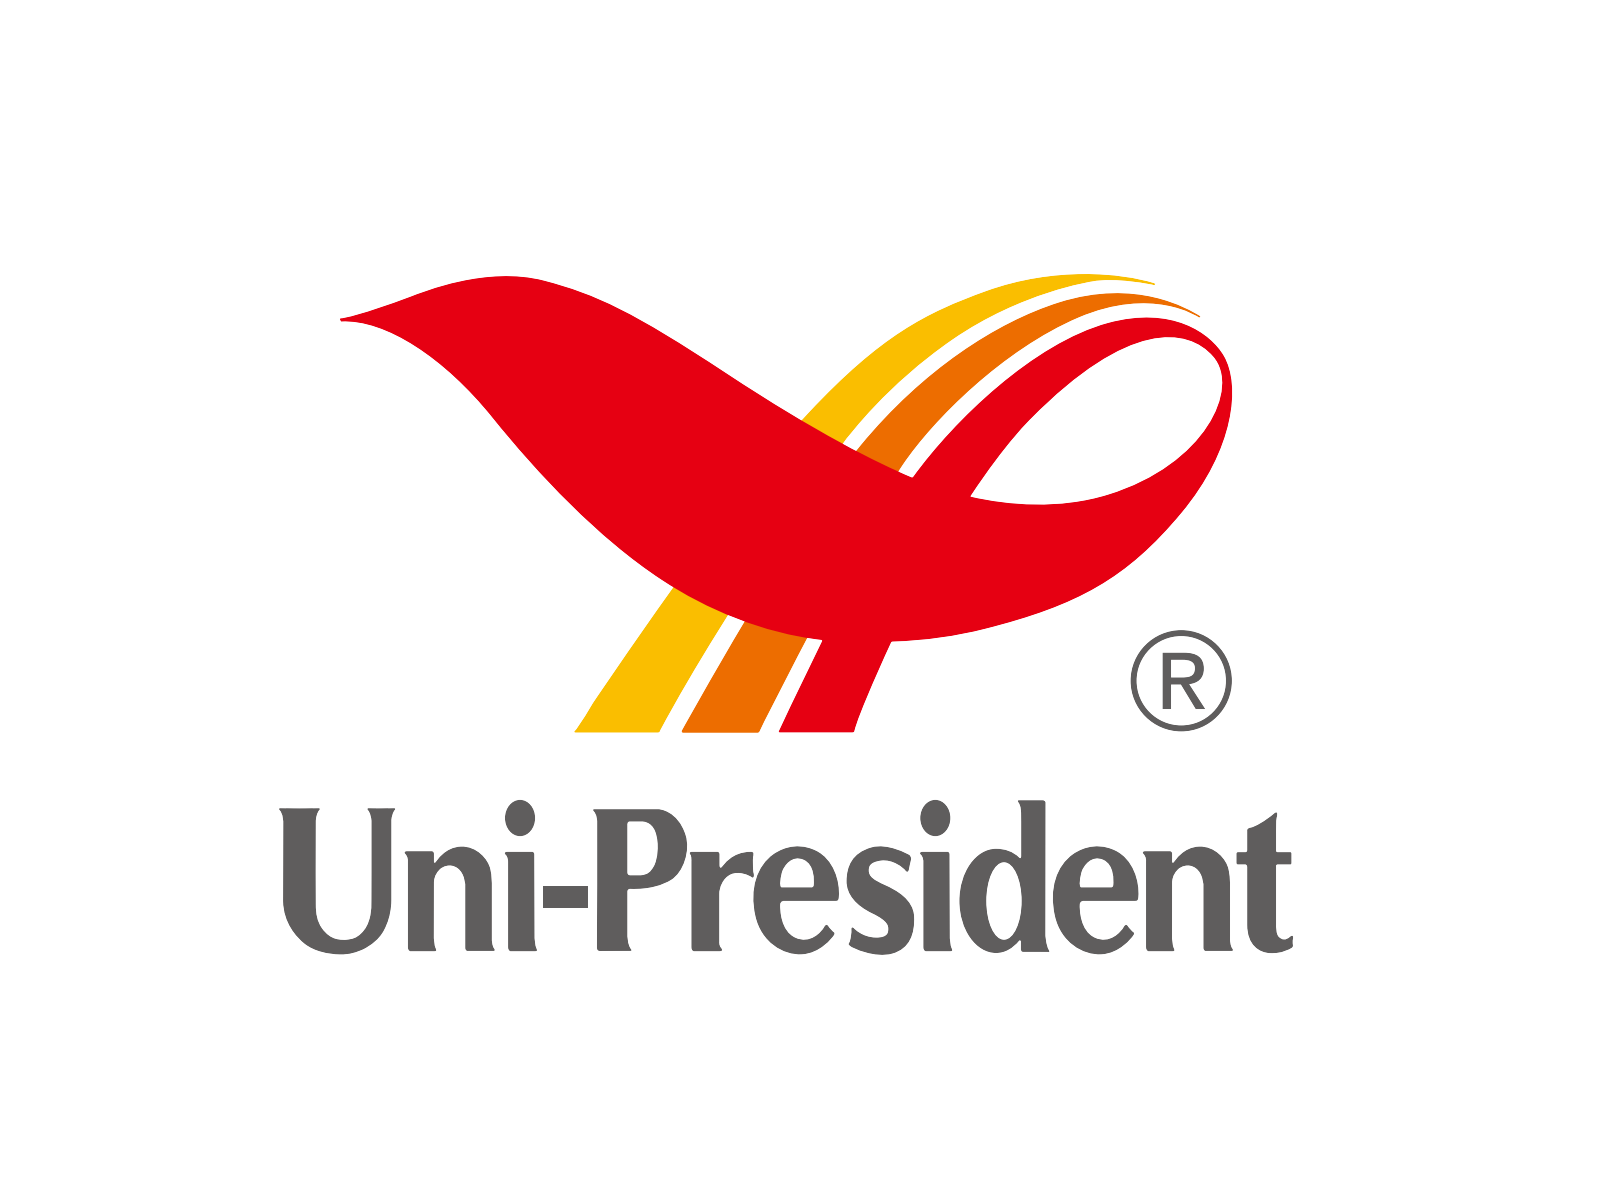 Business (Thailand) Corporation Company Uni-President Enterprises Ltd. Clipart